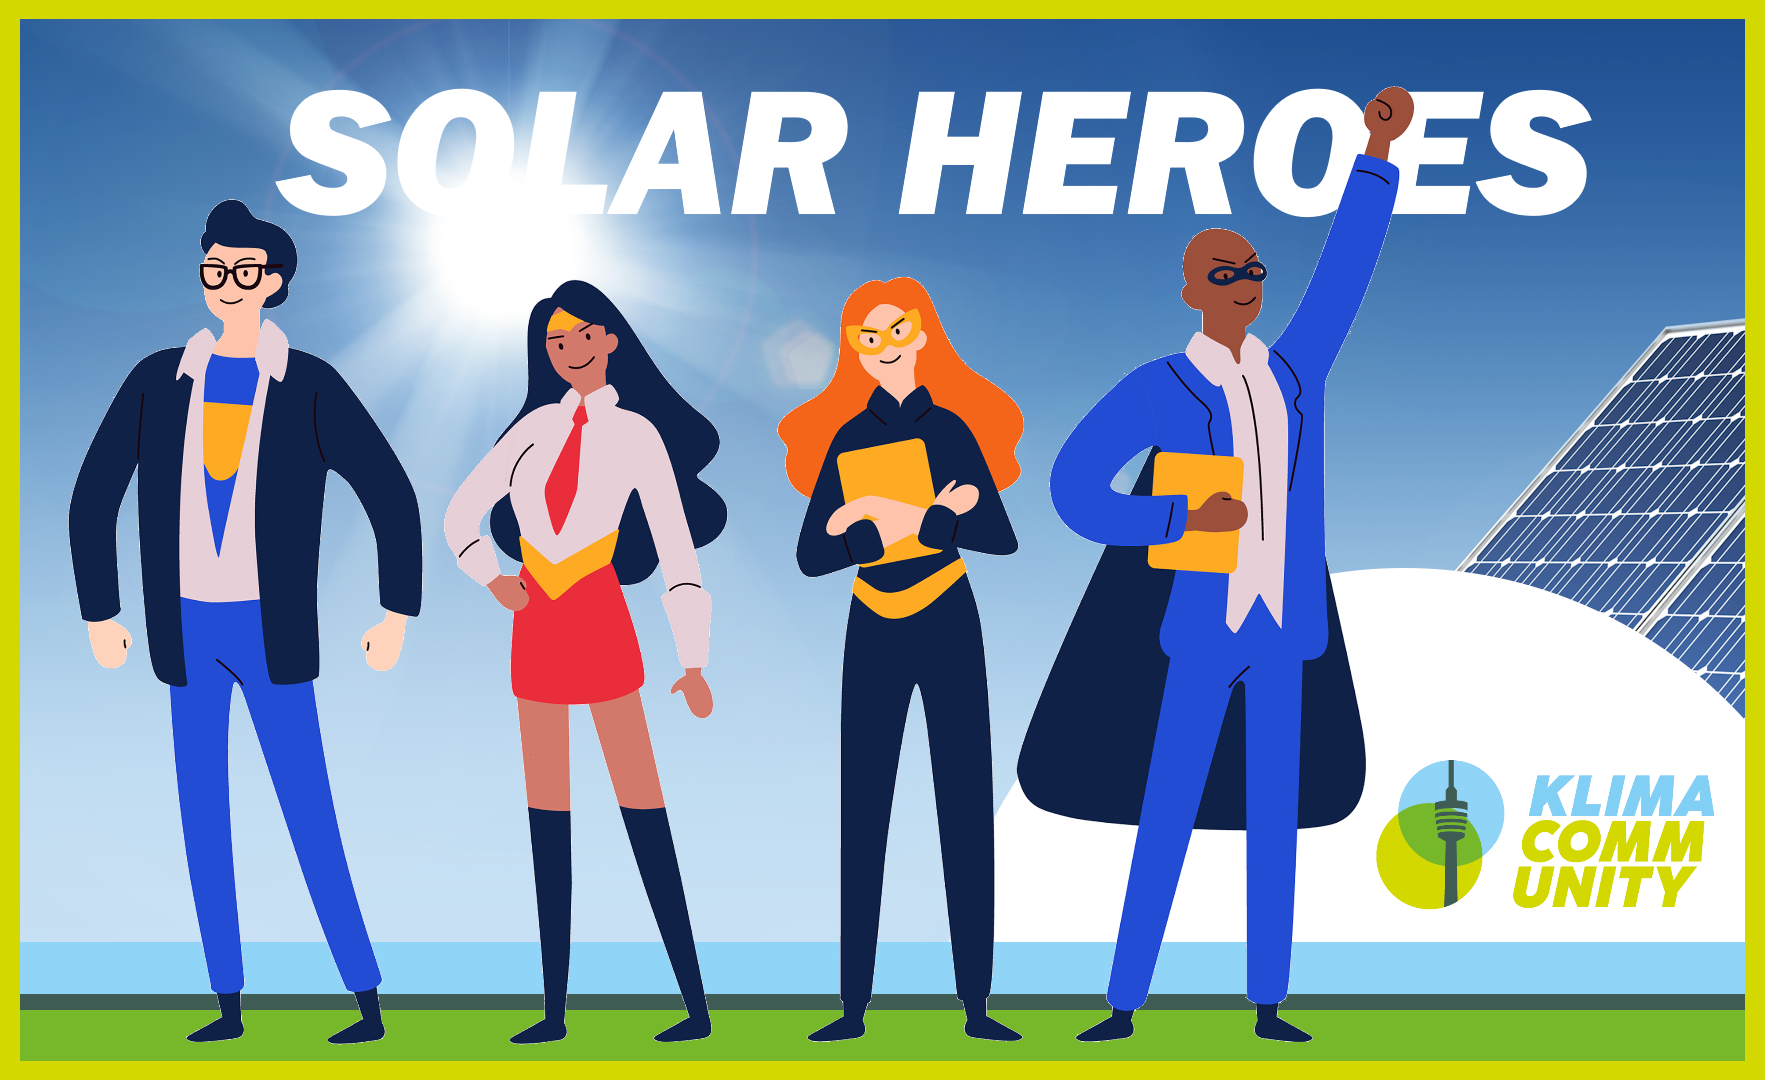 Werde zum Solar-Hero! Angebot der Klima-Community Stuttgart